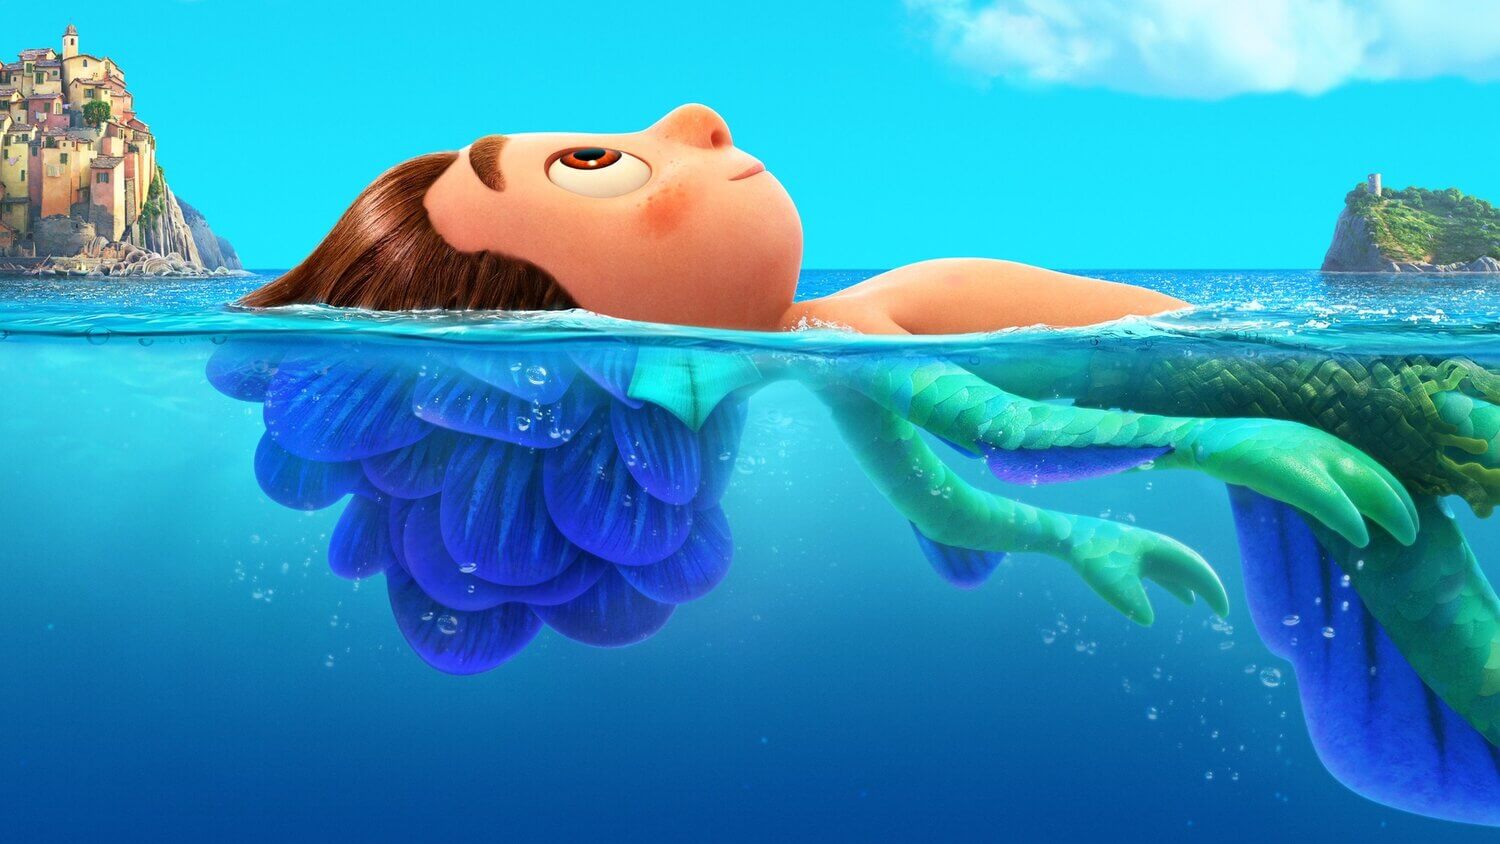 El director de “Luca” aclaró los rumores sobre el nuevo film de Pixar